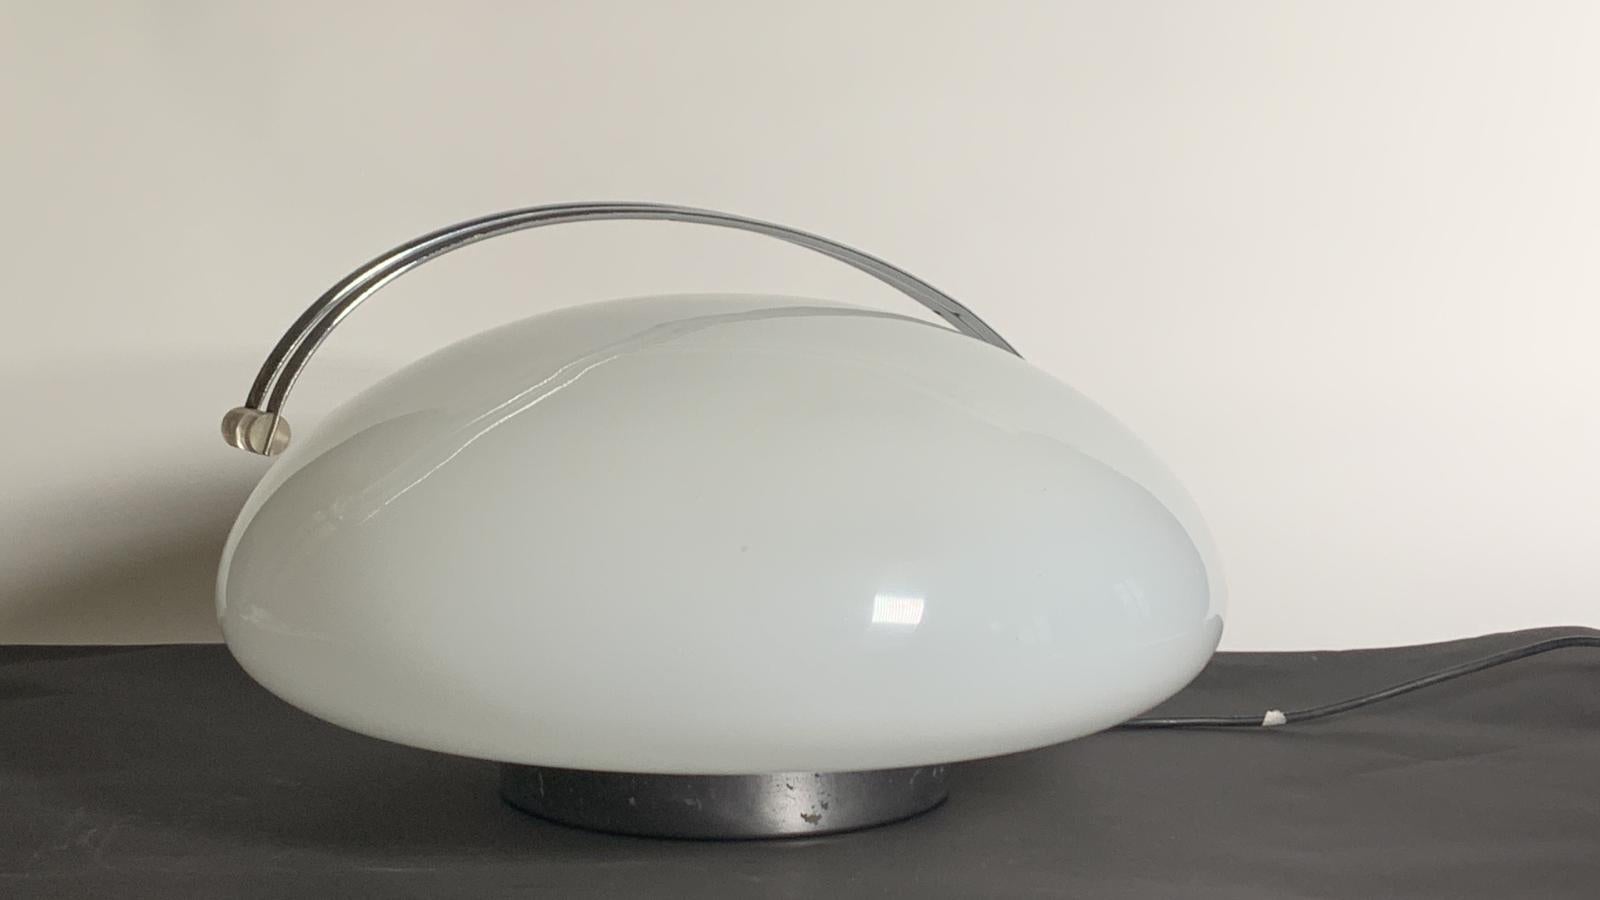 Le lampadaire Il Cammino a été conçu en 1972 par Angelo Mangiarotti pour Iter Elettronica. Il est fabriqué en verre opalin avec une base chromée. Grâce à un interrupteur tactile, cette lampe s'allume, s'éteint et s'atténue. Label avec étiquette du